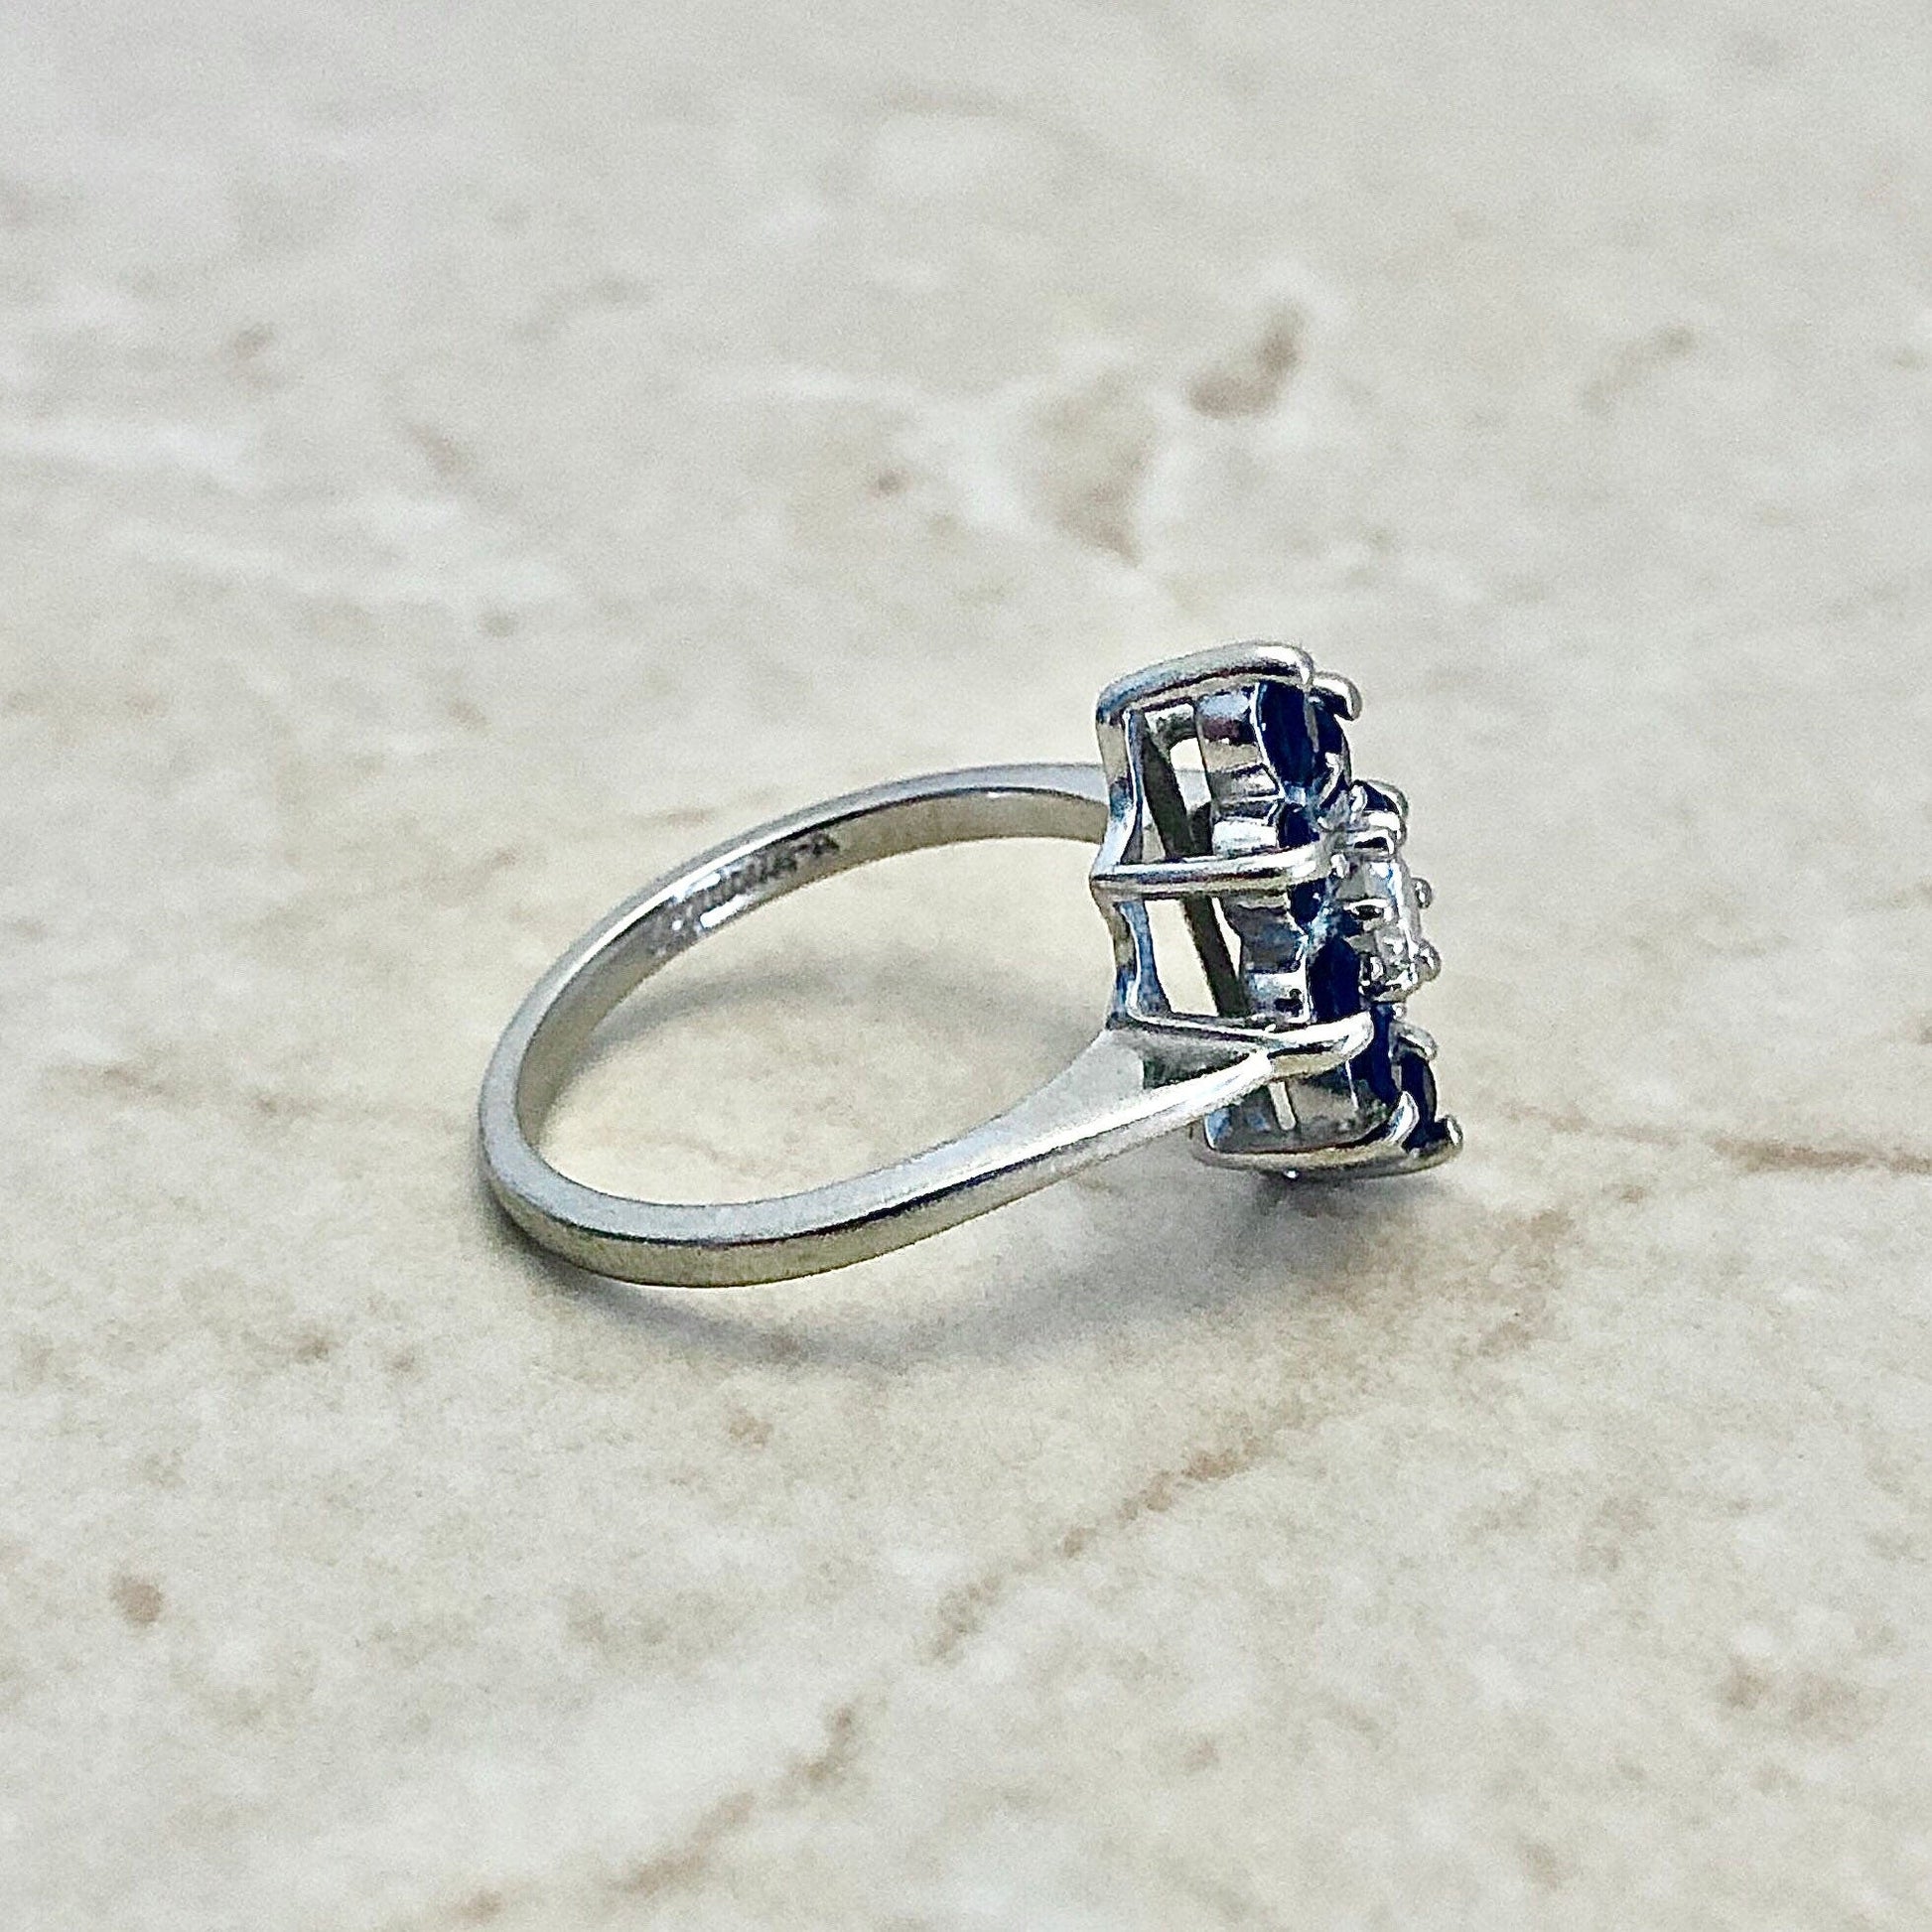 Fine Sapphire & Diamond Navette Ring - 14 Karat White Gold - Cocktail Ring - Sapphire Ring - April September Birthstone - Anniversary Ring